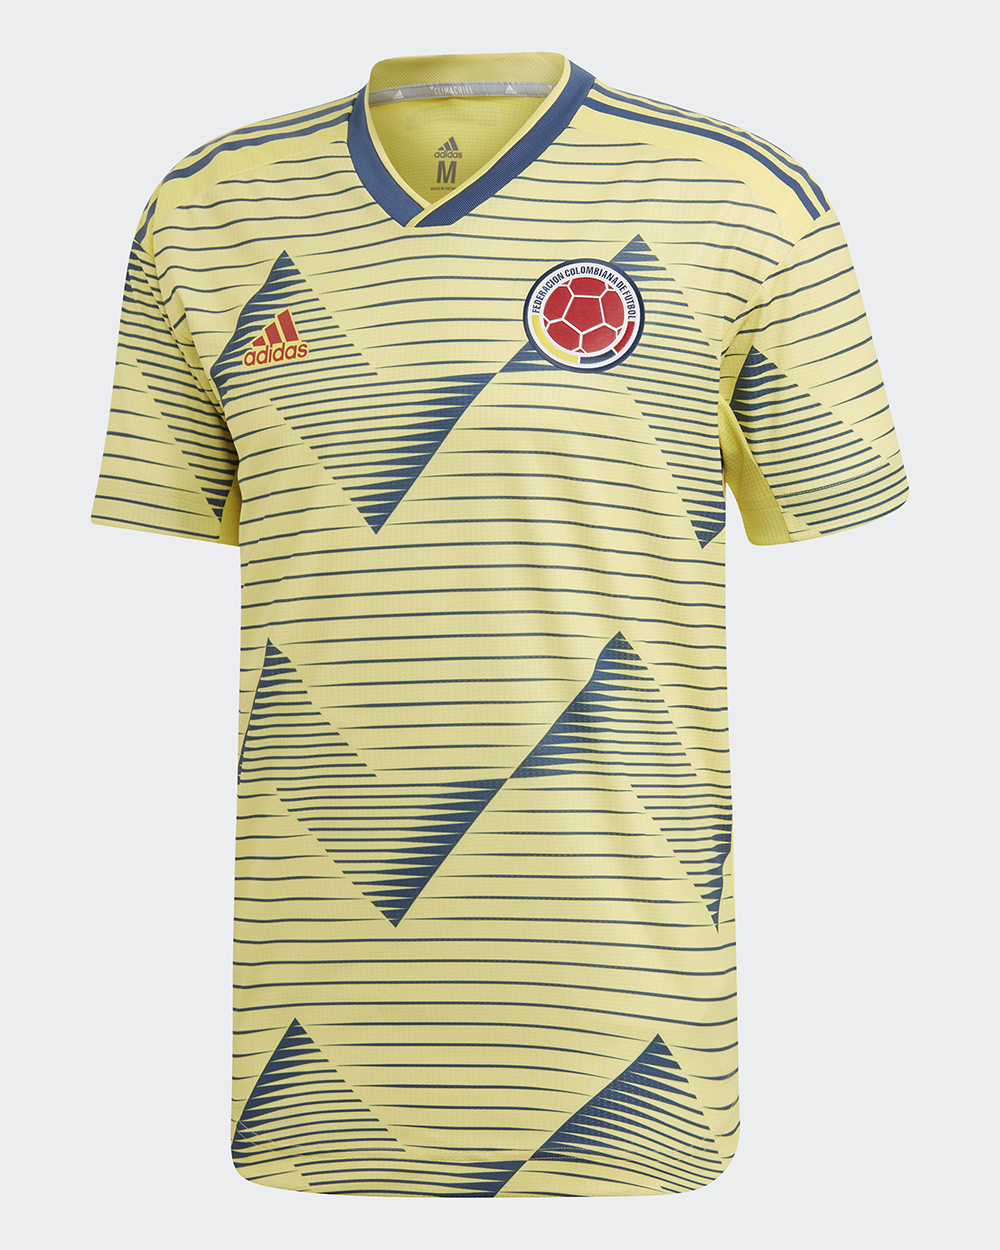 Camiseta adidas de Colombia Copa América 2019 - Marca de Gol